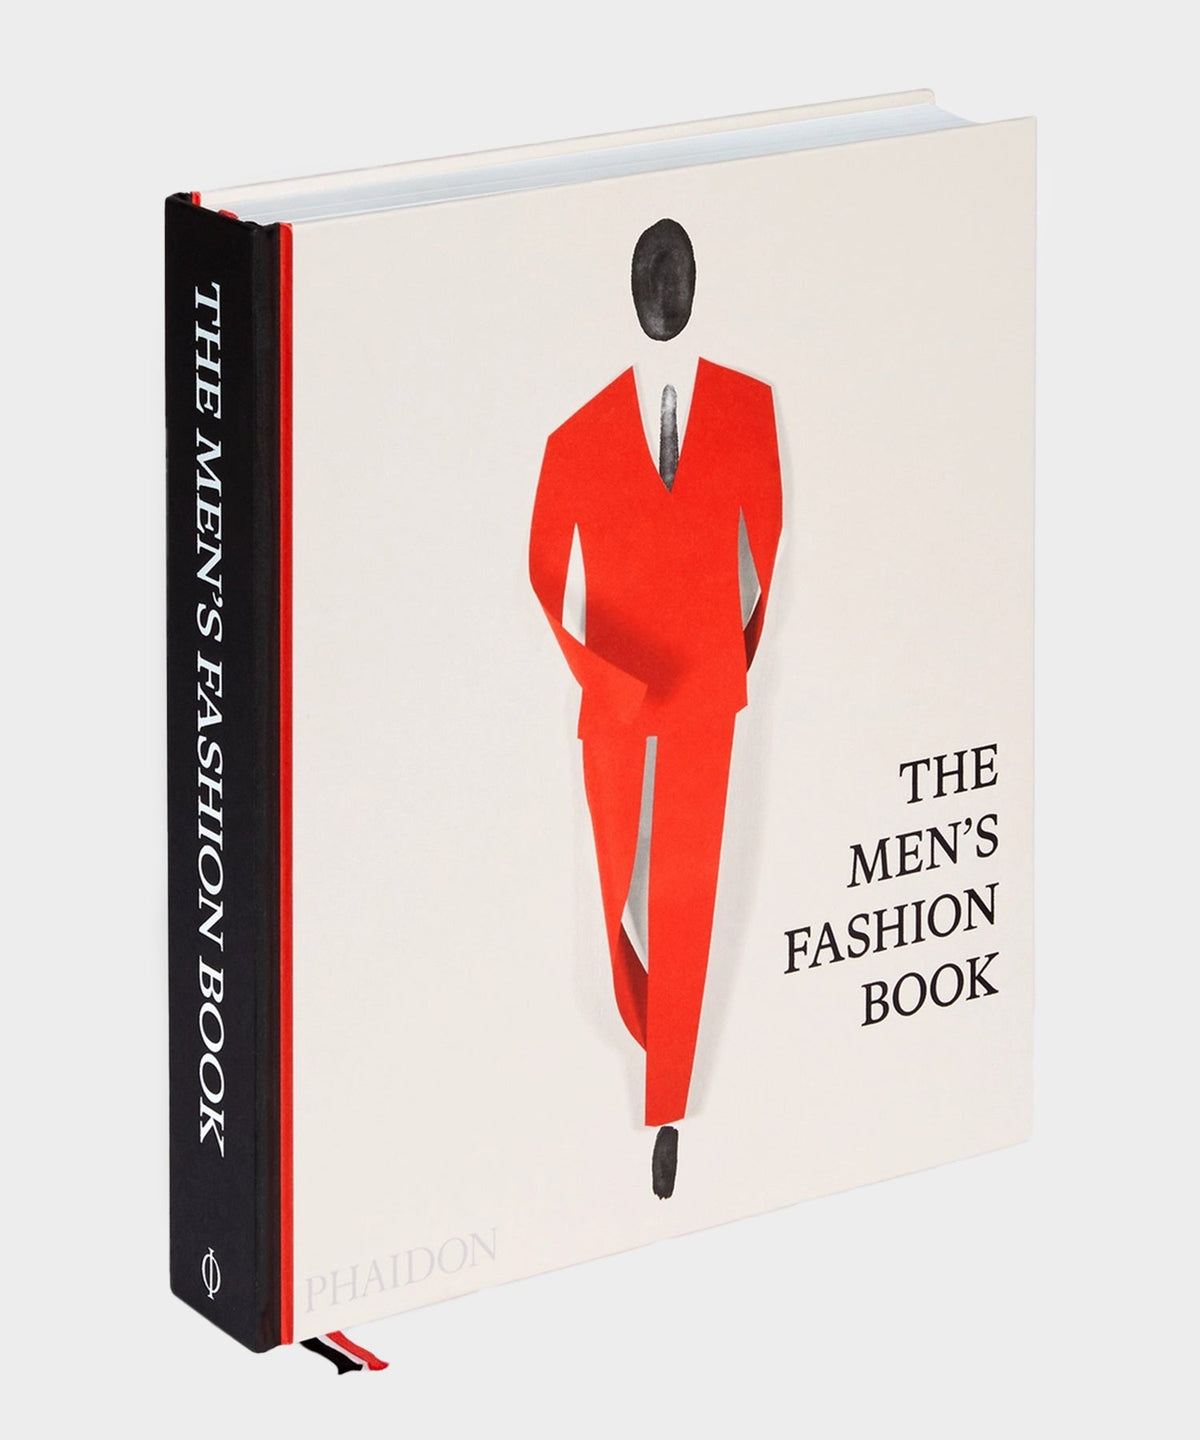 Phaidon "Mens Fashion" Book